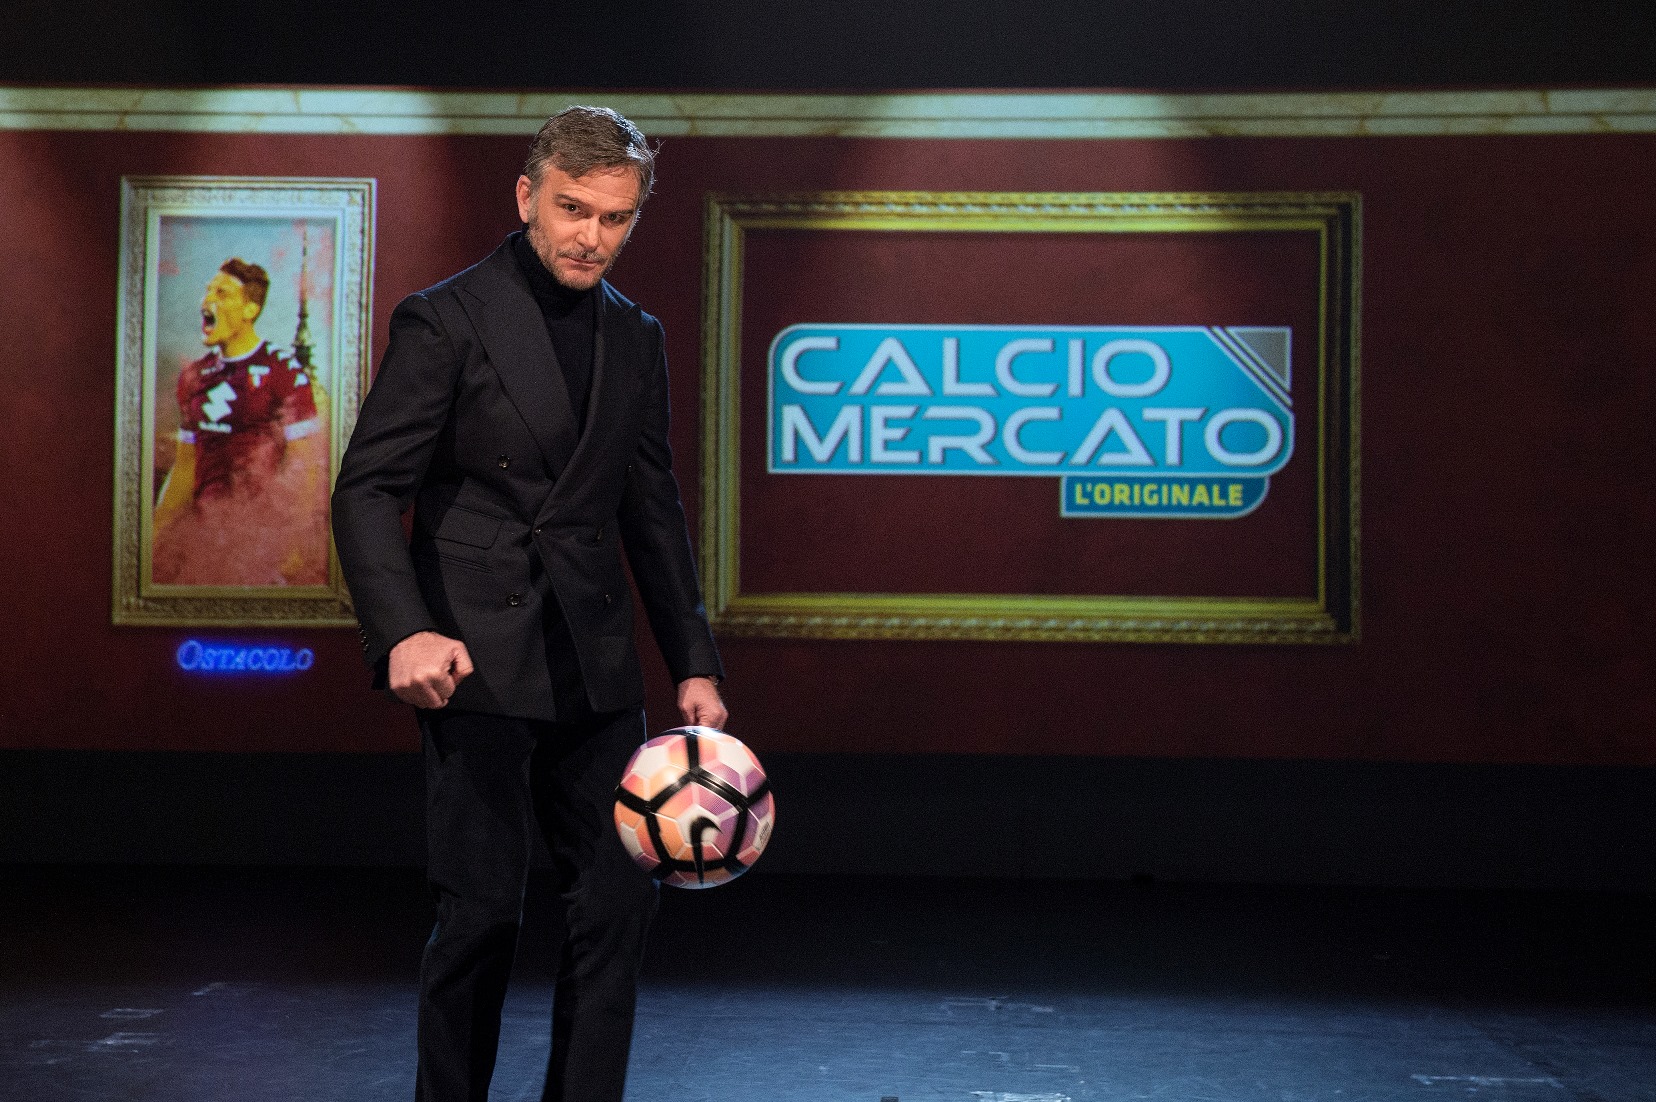 Alessandro Bonan e “Calciomercato”, l’ultimo mistero del calcio in TV